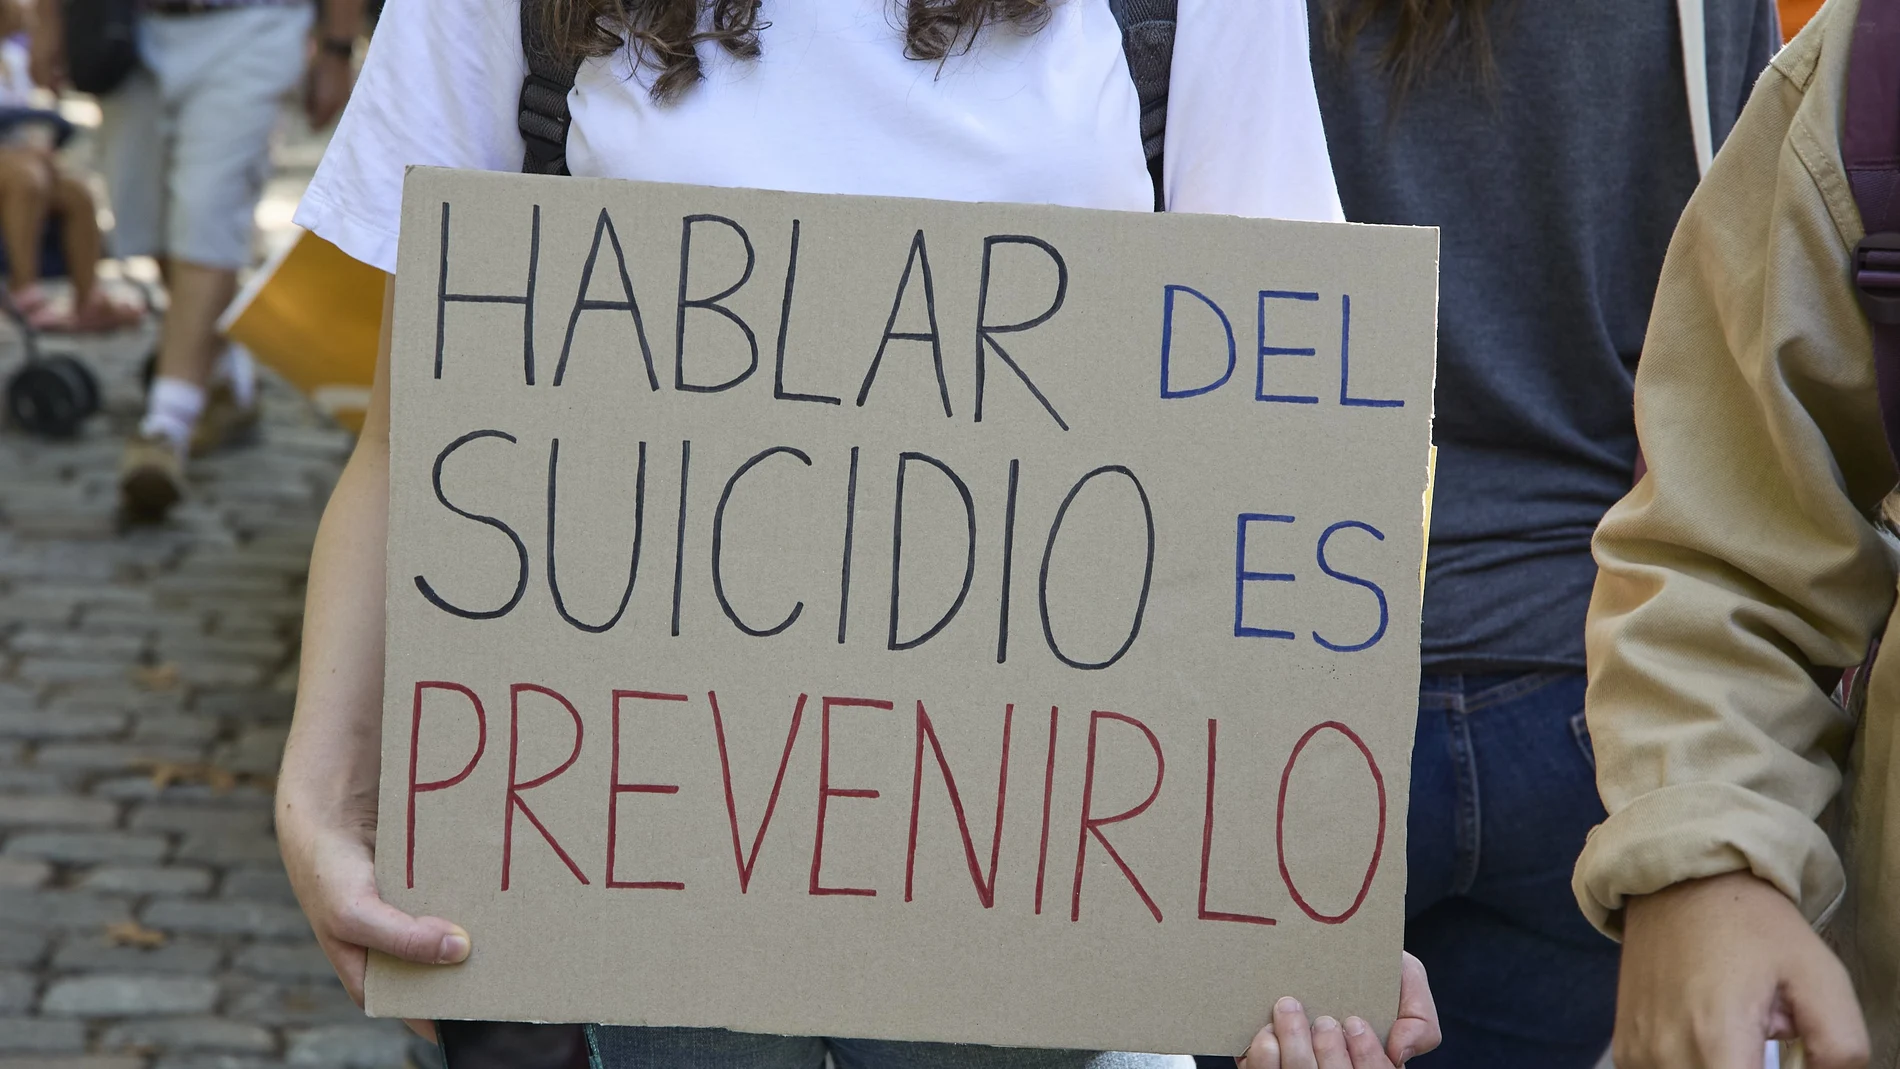 Una persona muestra una pancarta que reza 'Hablar de suicidio es prevenirlo' durante una manifestación para exigir un Plan Nacional de Prevención del Suicidio, a 10 de septiembre, en Madrid (España)